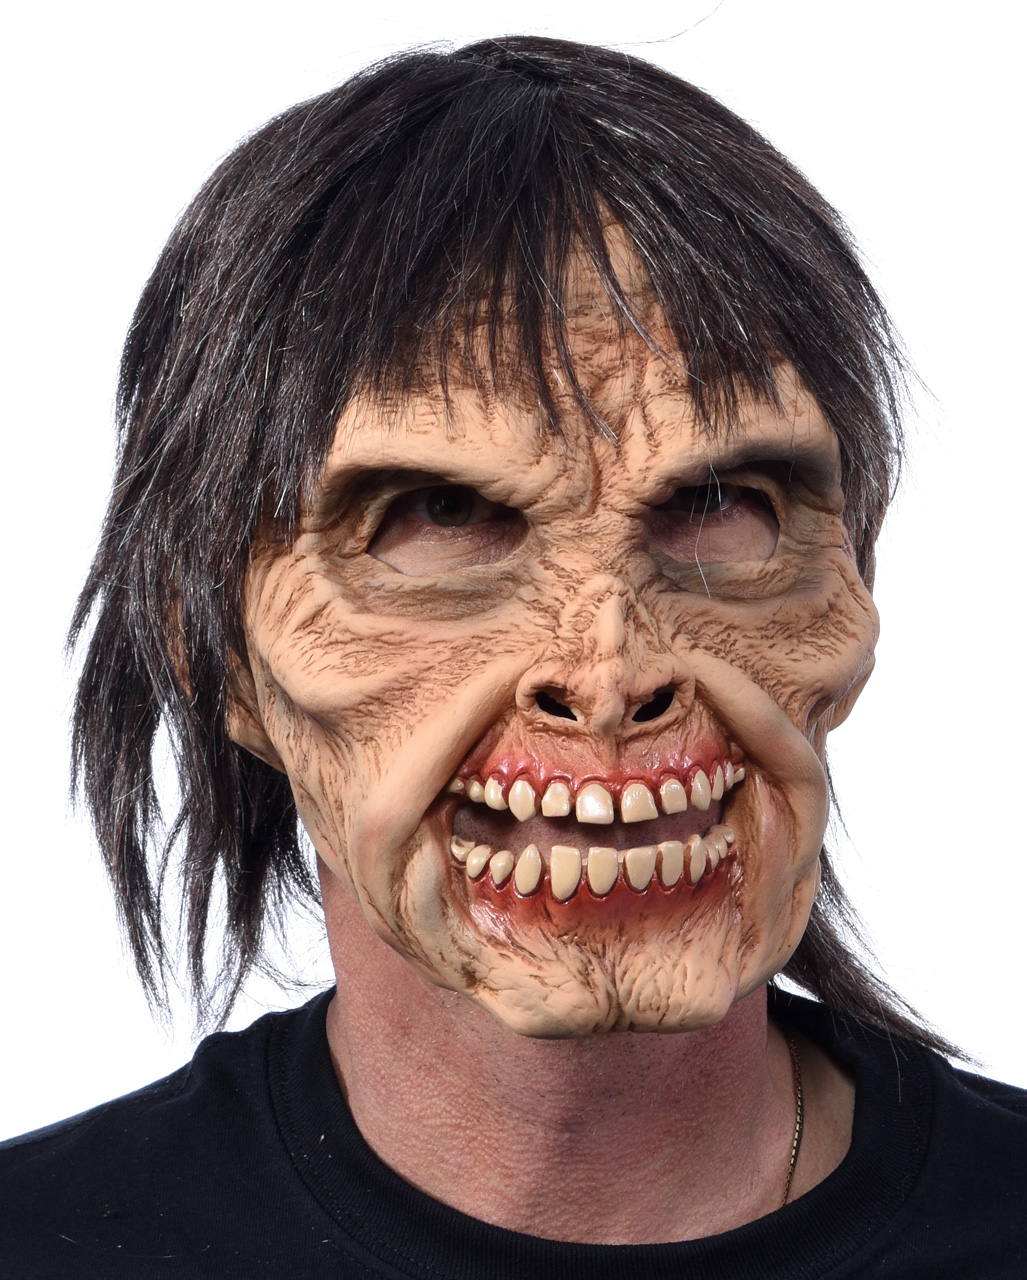 Mr. Living Dead Zombie Maske  Horror Masken kaufen von Horror-Shop.com